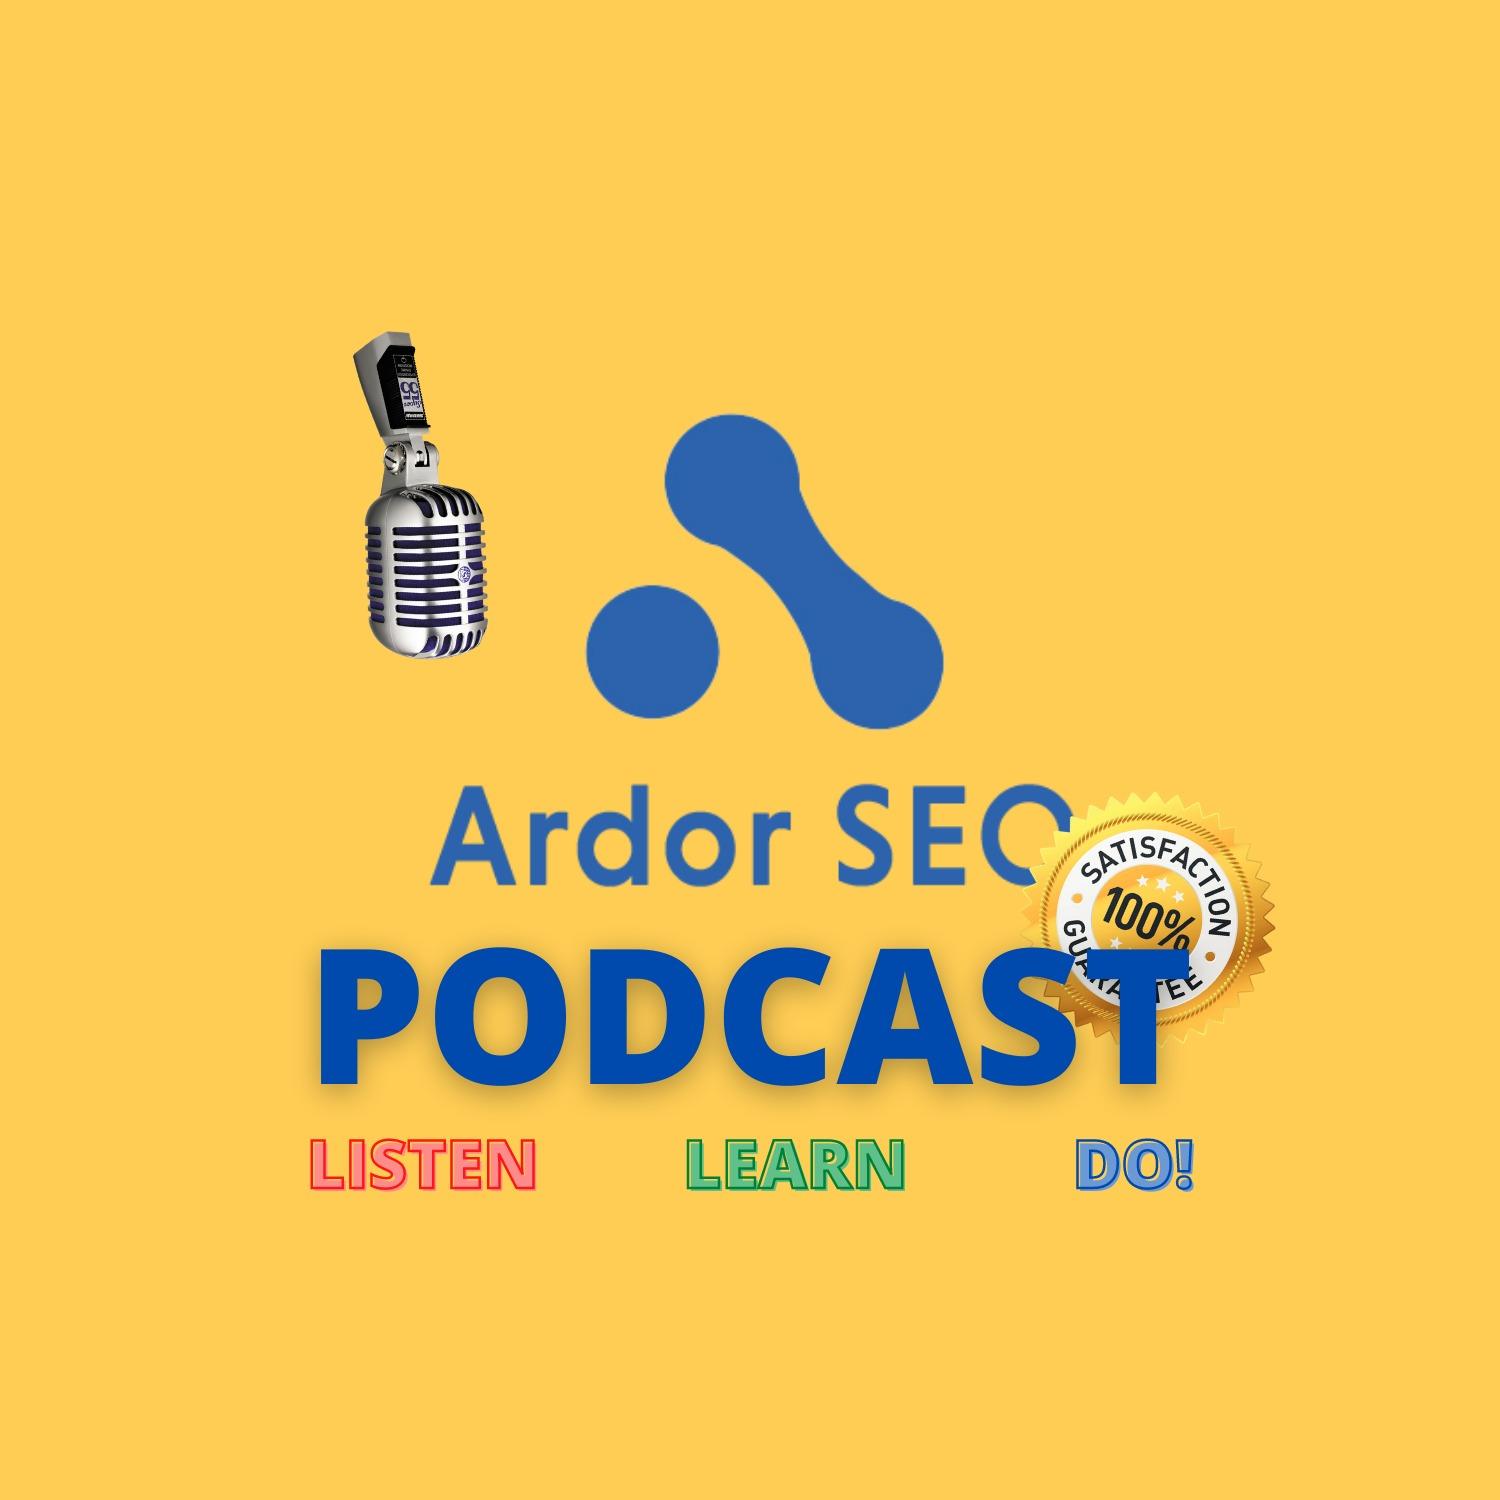 Ardor SEO Podcast